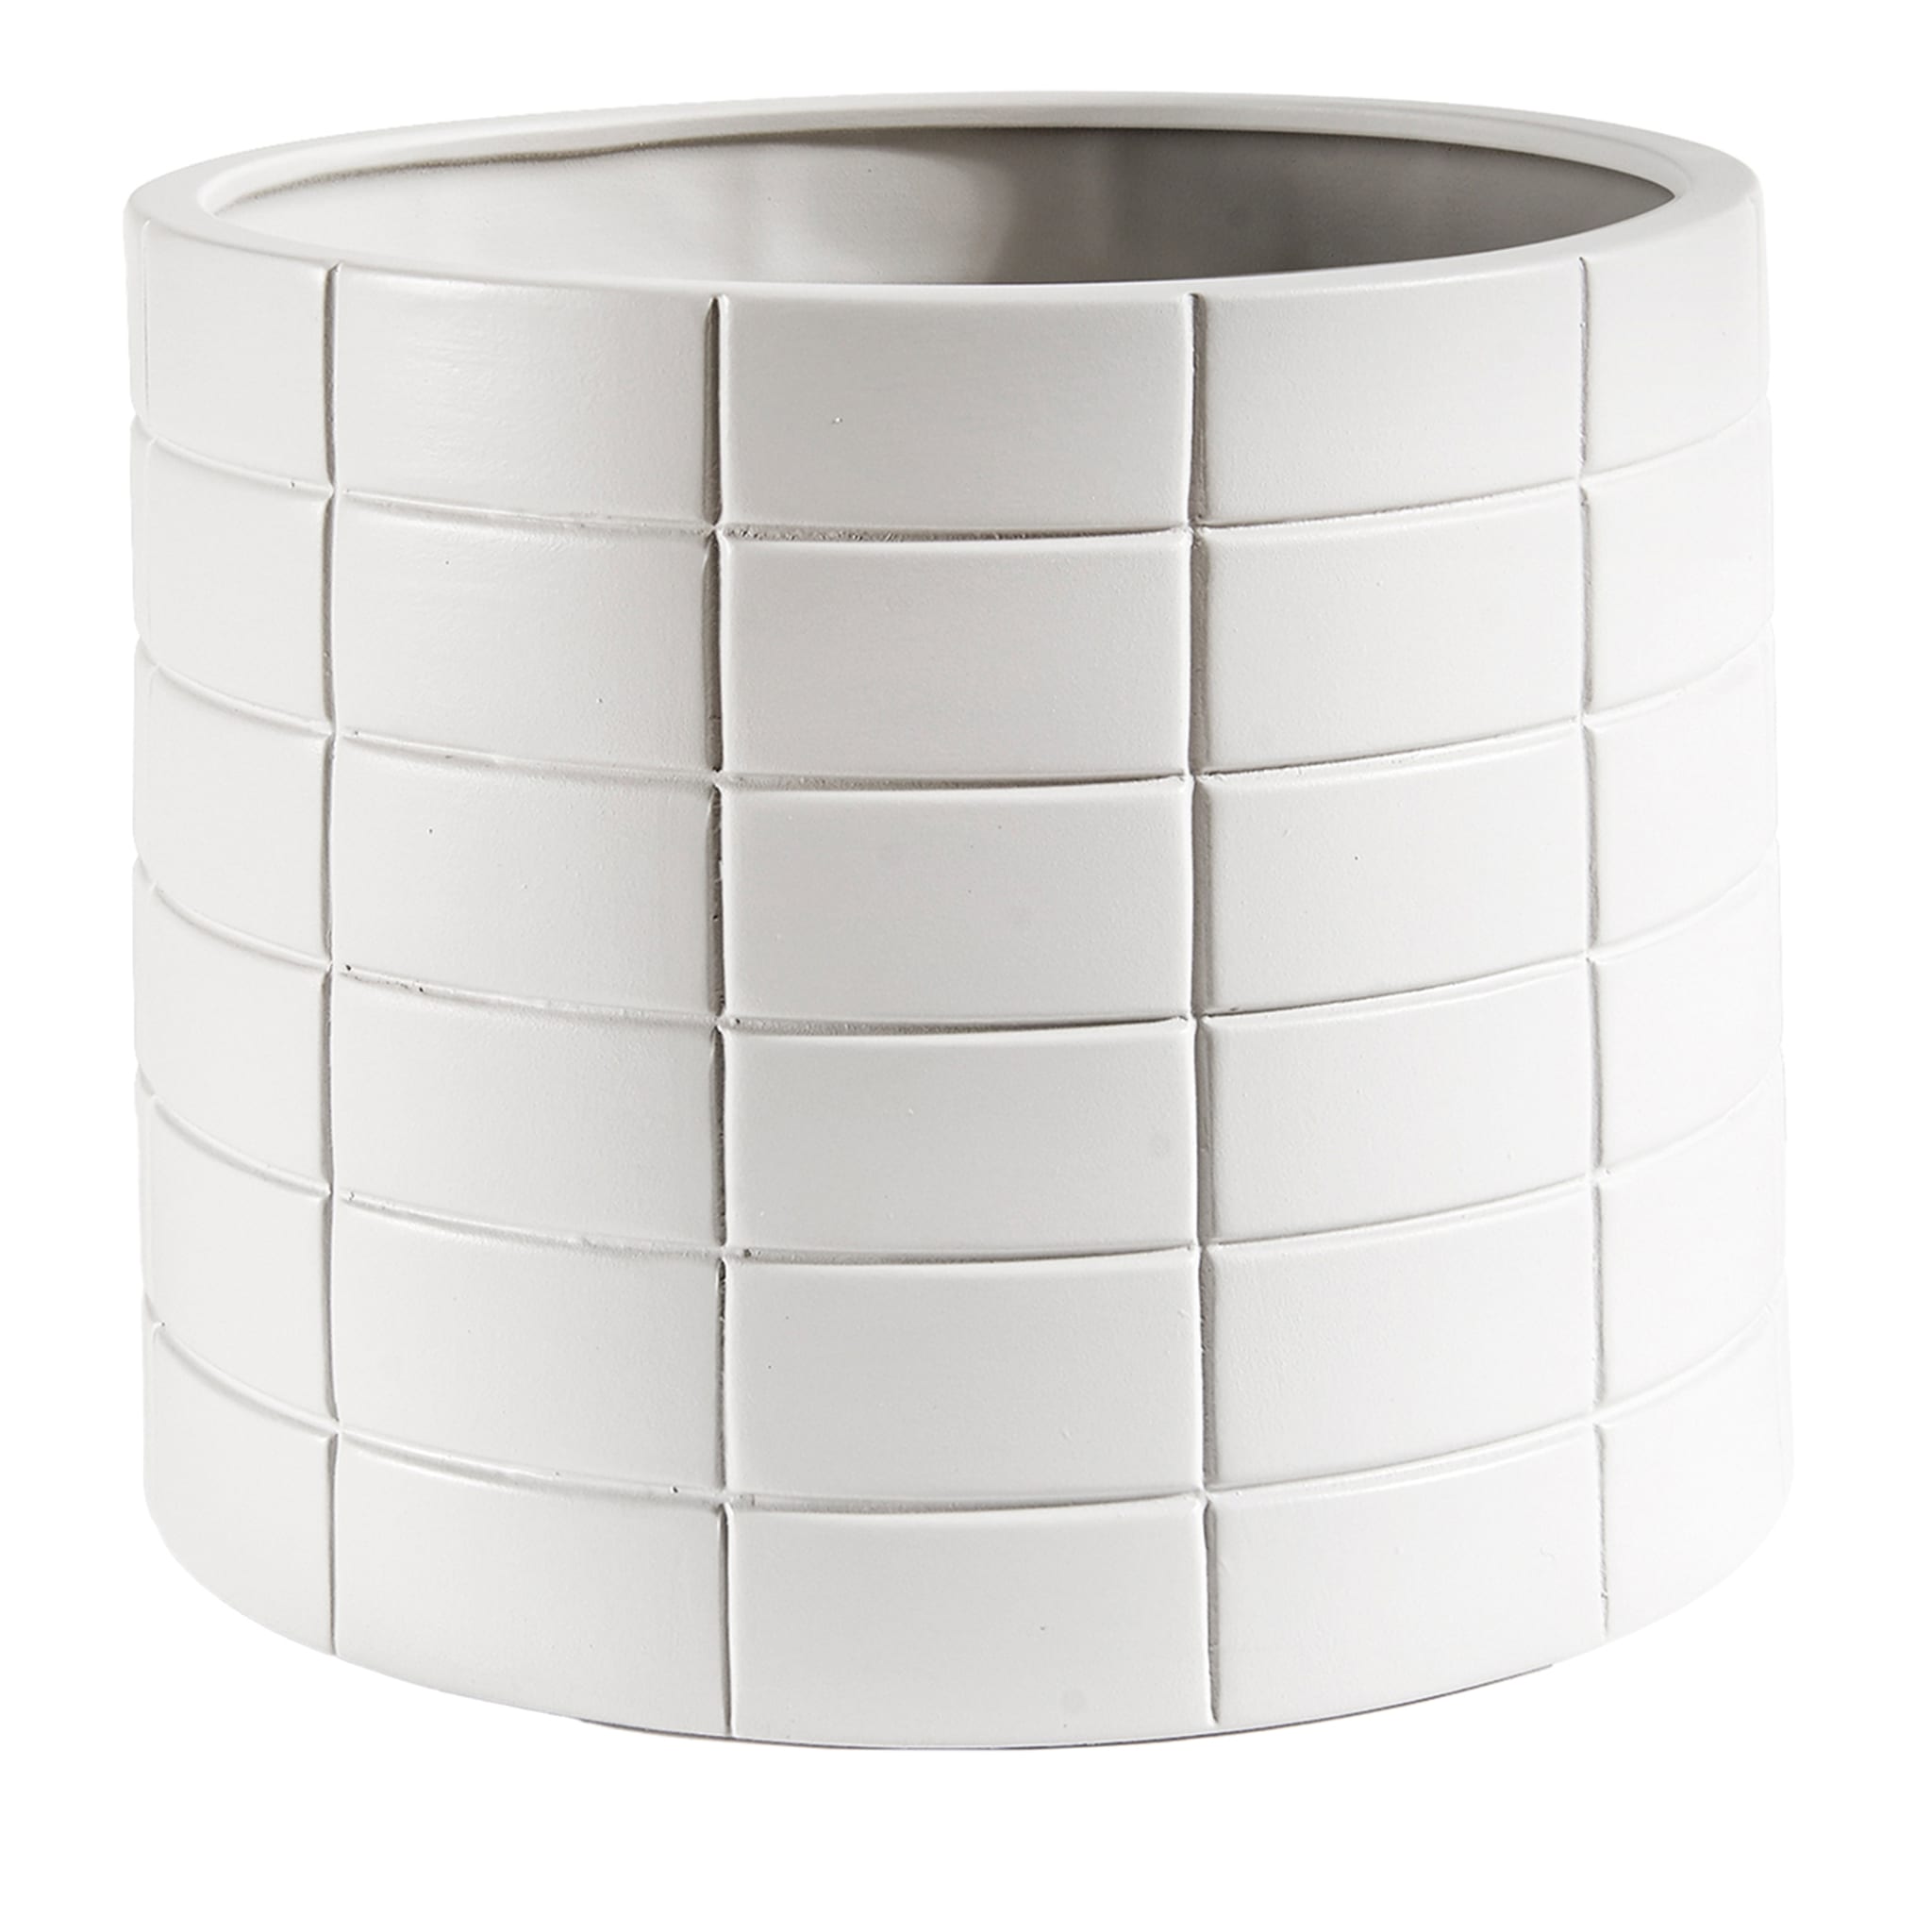 Rikuadra White Ceramic Vase #2 - Main view